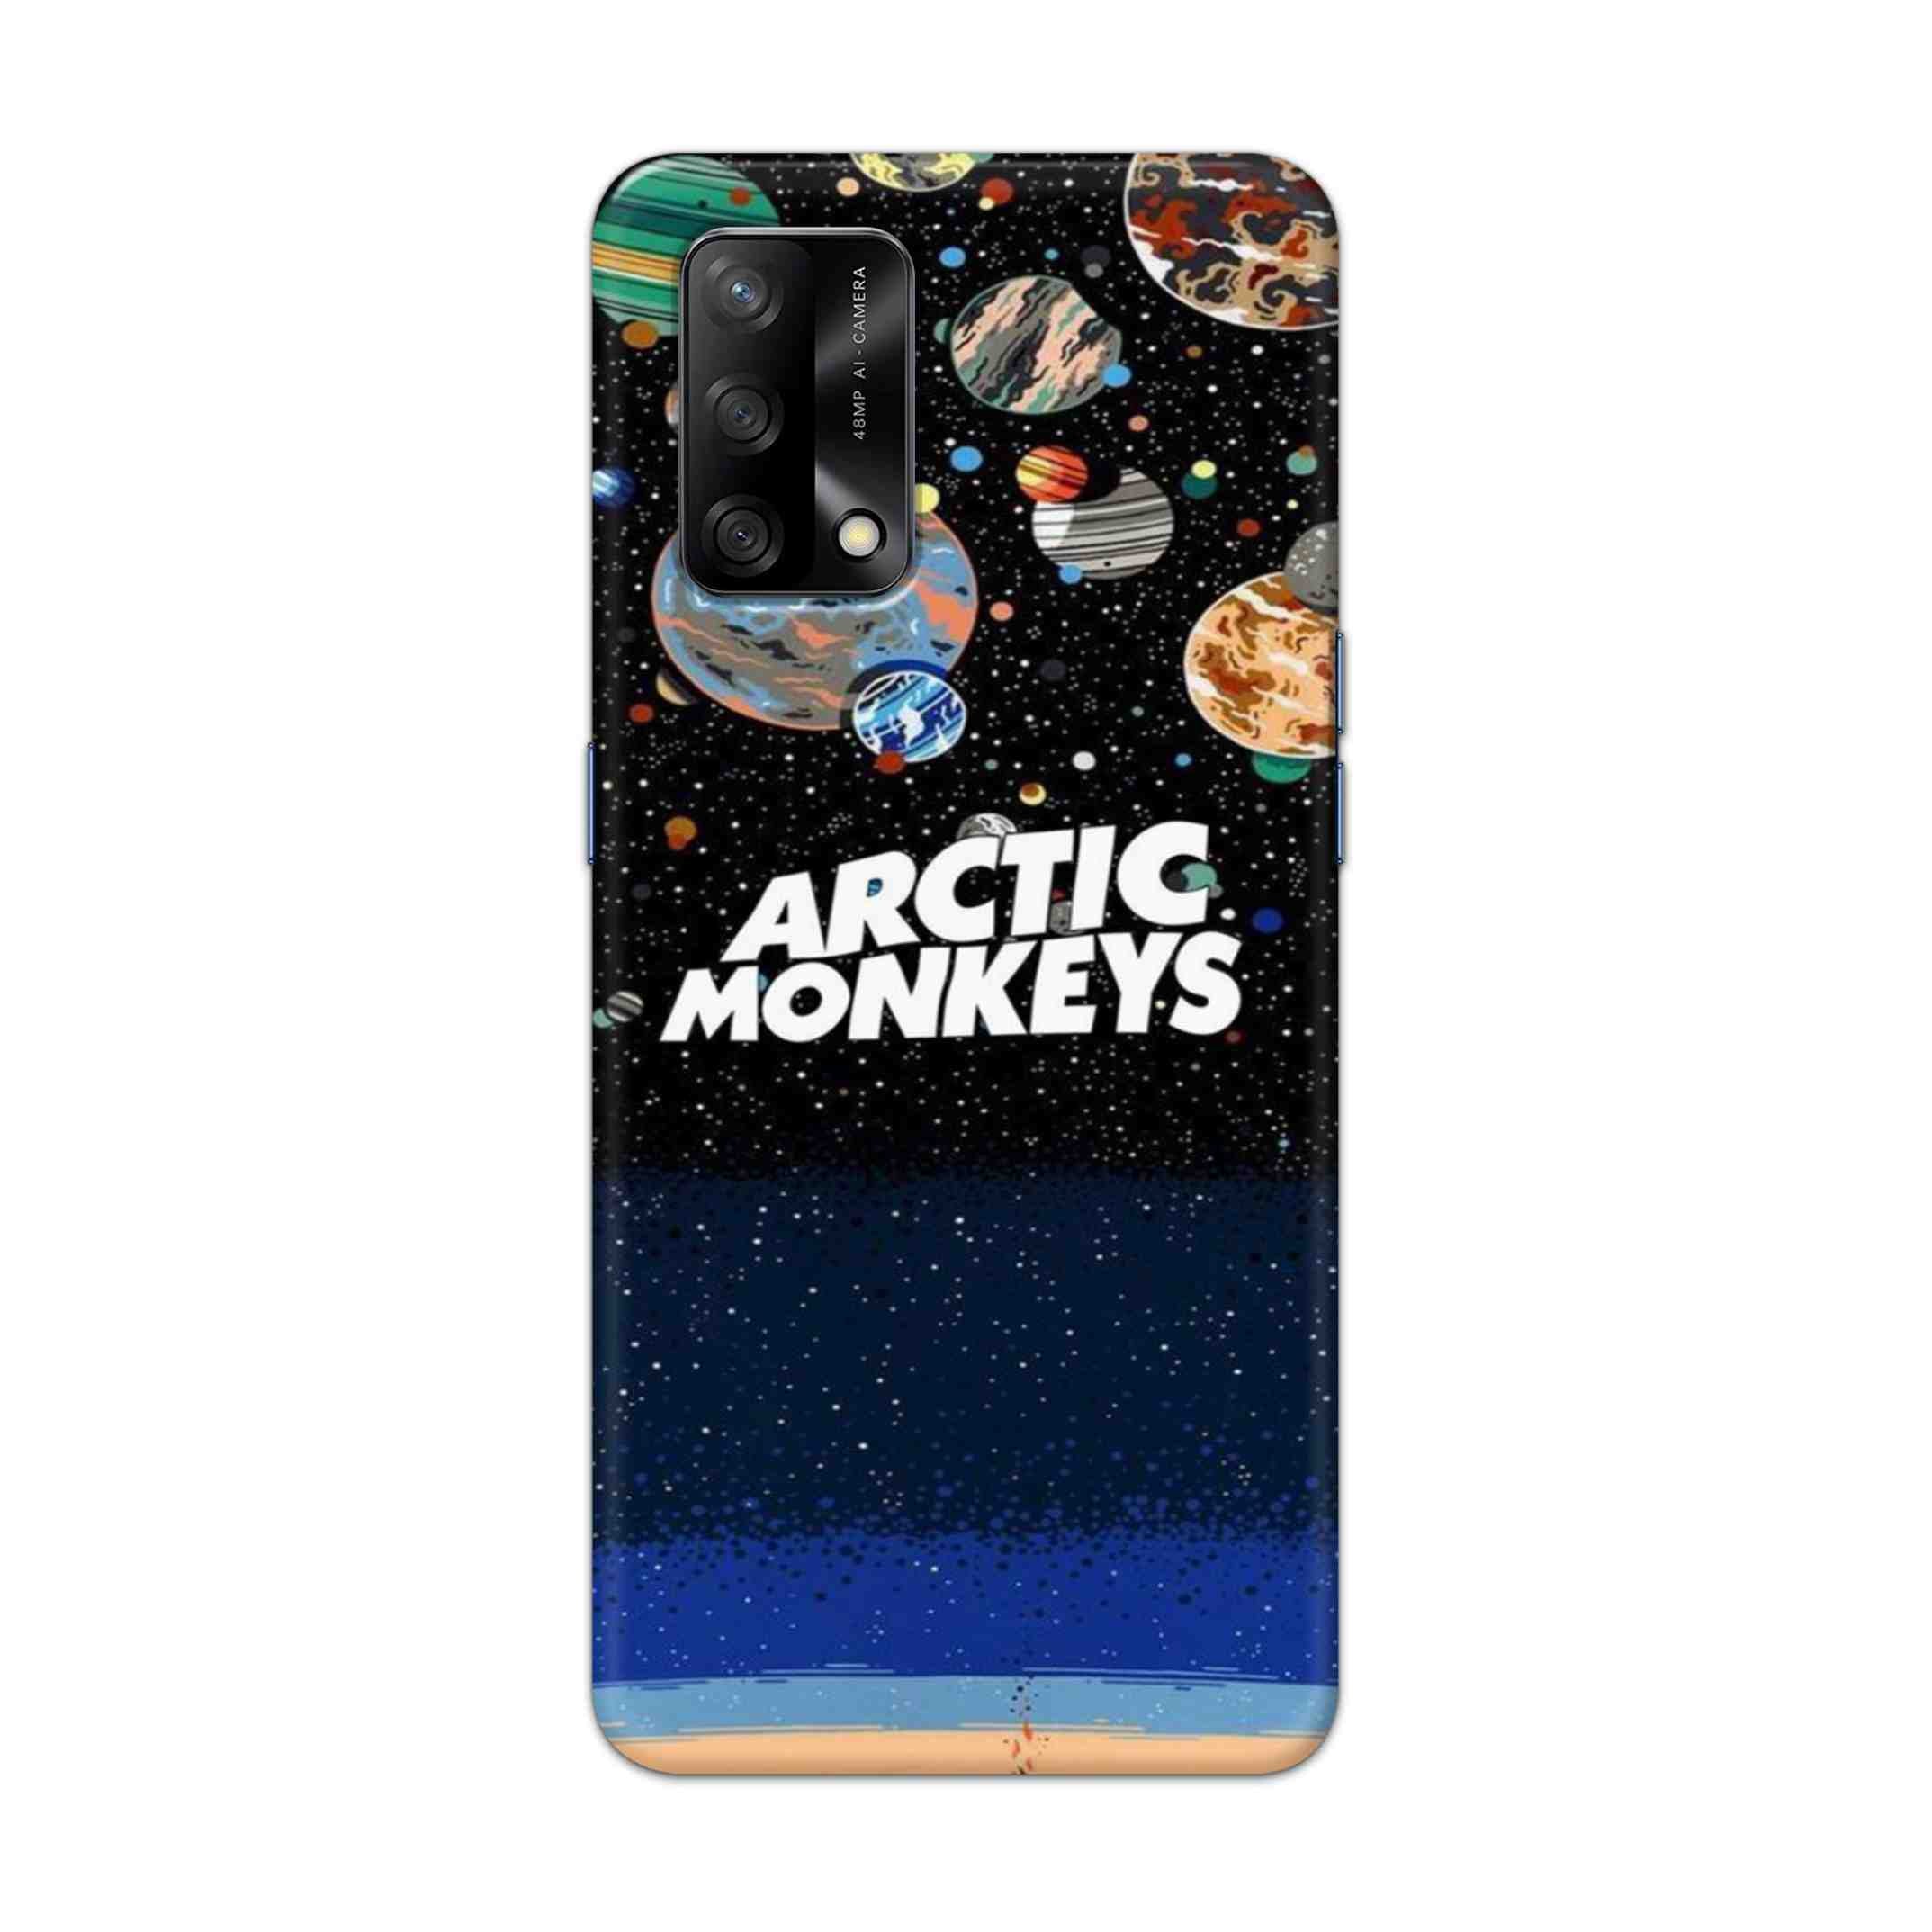 Buy Artic Monkeys Hard Back Mobile Phone Case Cover For Oppo F19 Online